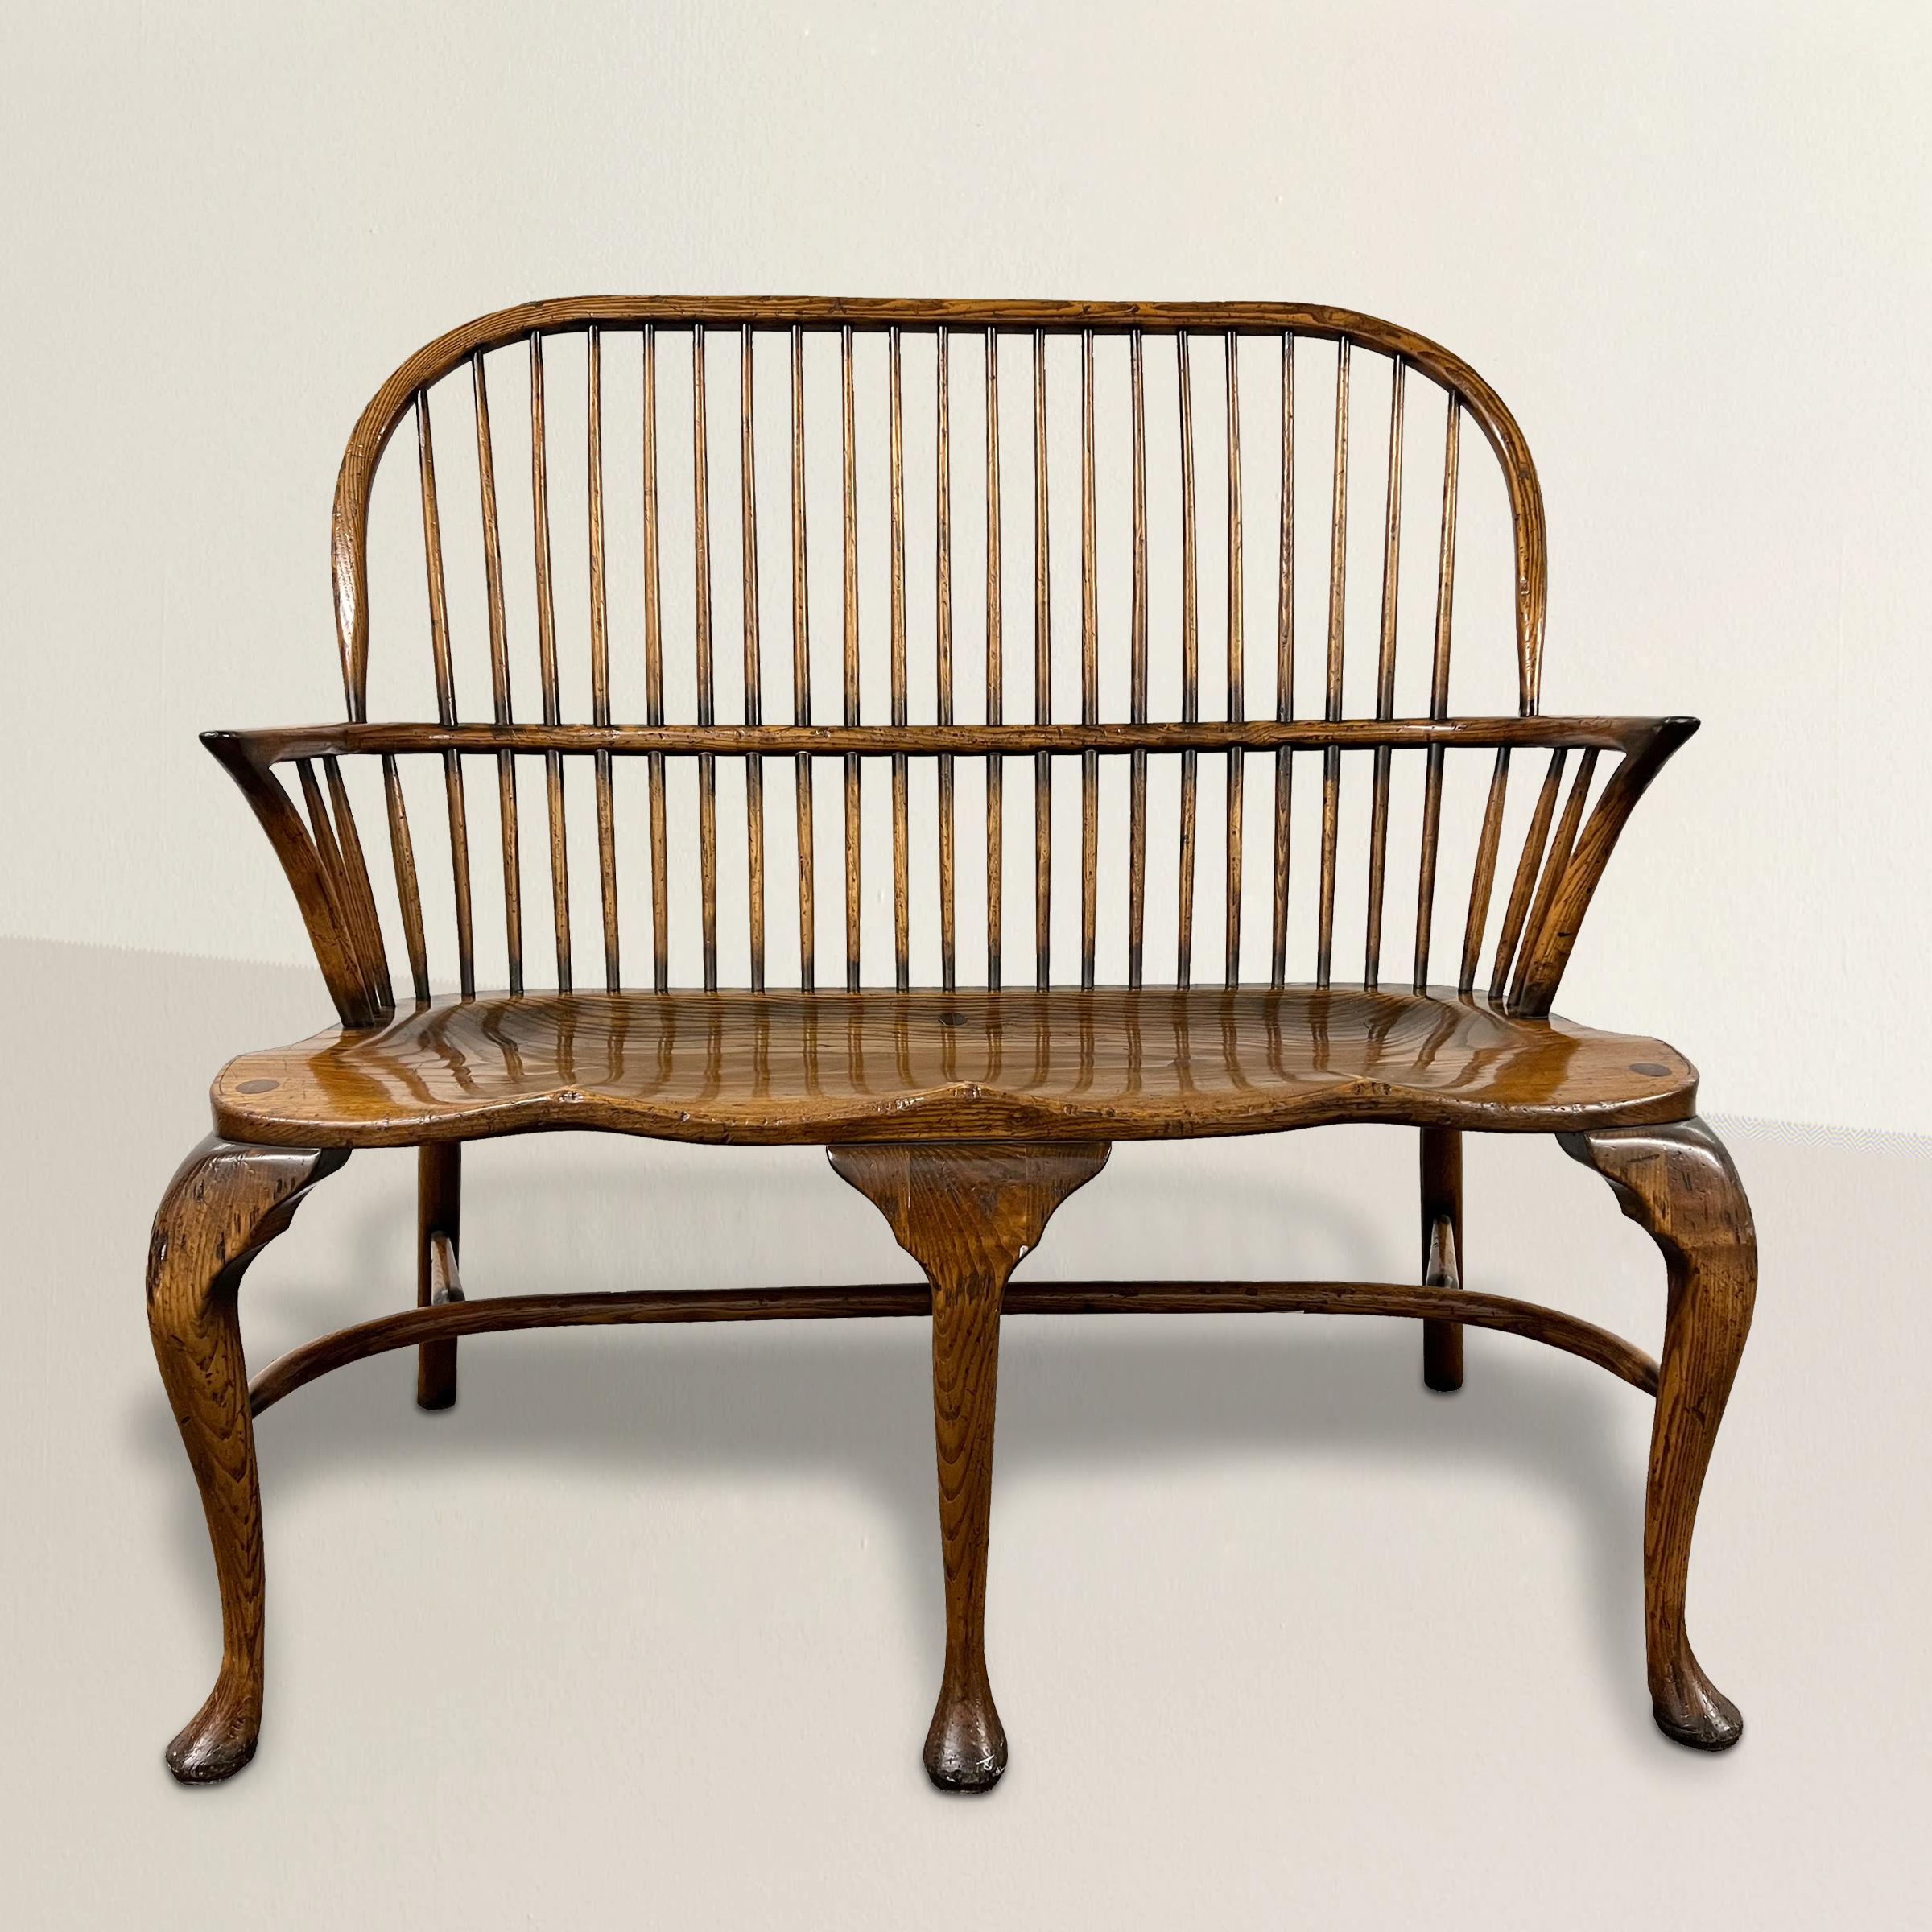 Treten Sie ein in die zeitlose Eleganz dieser zweisitzigen Windsor-Bank aus englischer Eiche aus dem 20. Jahrhundert, eine wahre Verkörperung traditioneller Handwerkskunst und raffinierten Designs. Diese Bank ist aus robustem Eichenholz gefertigt